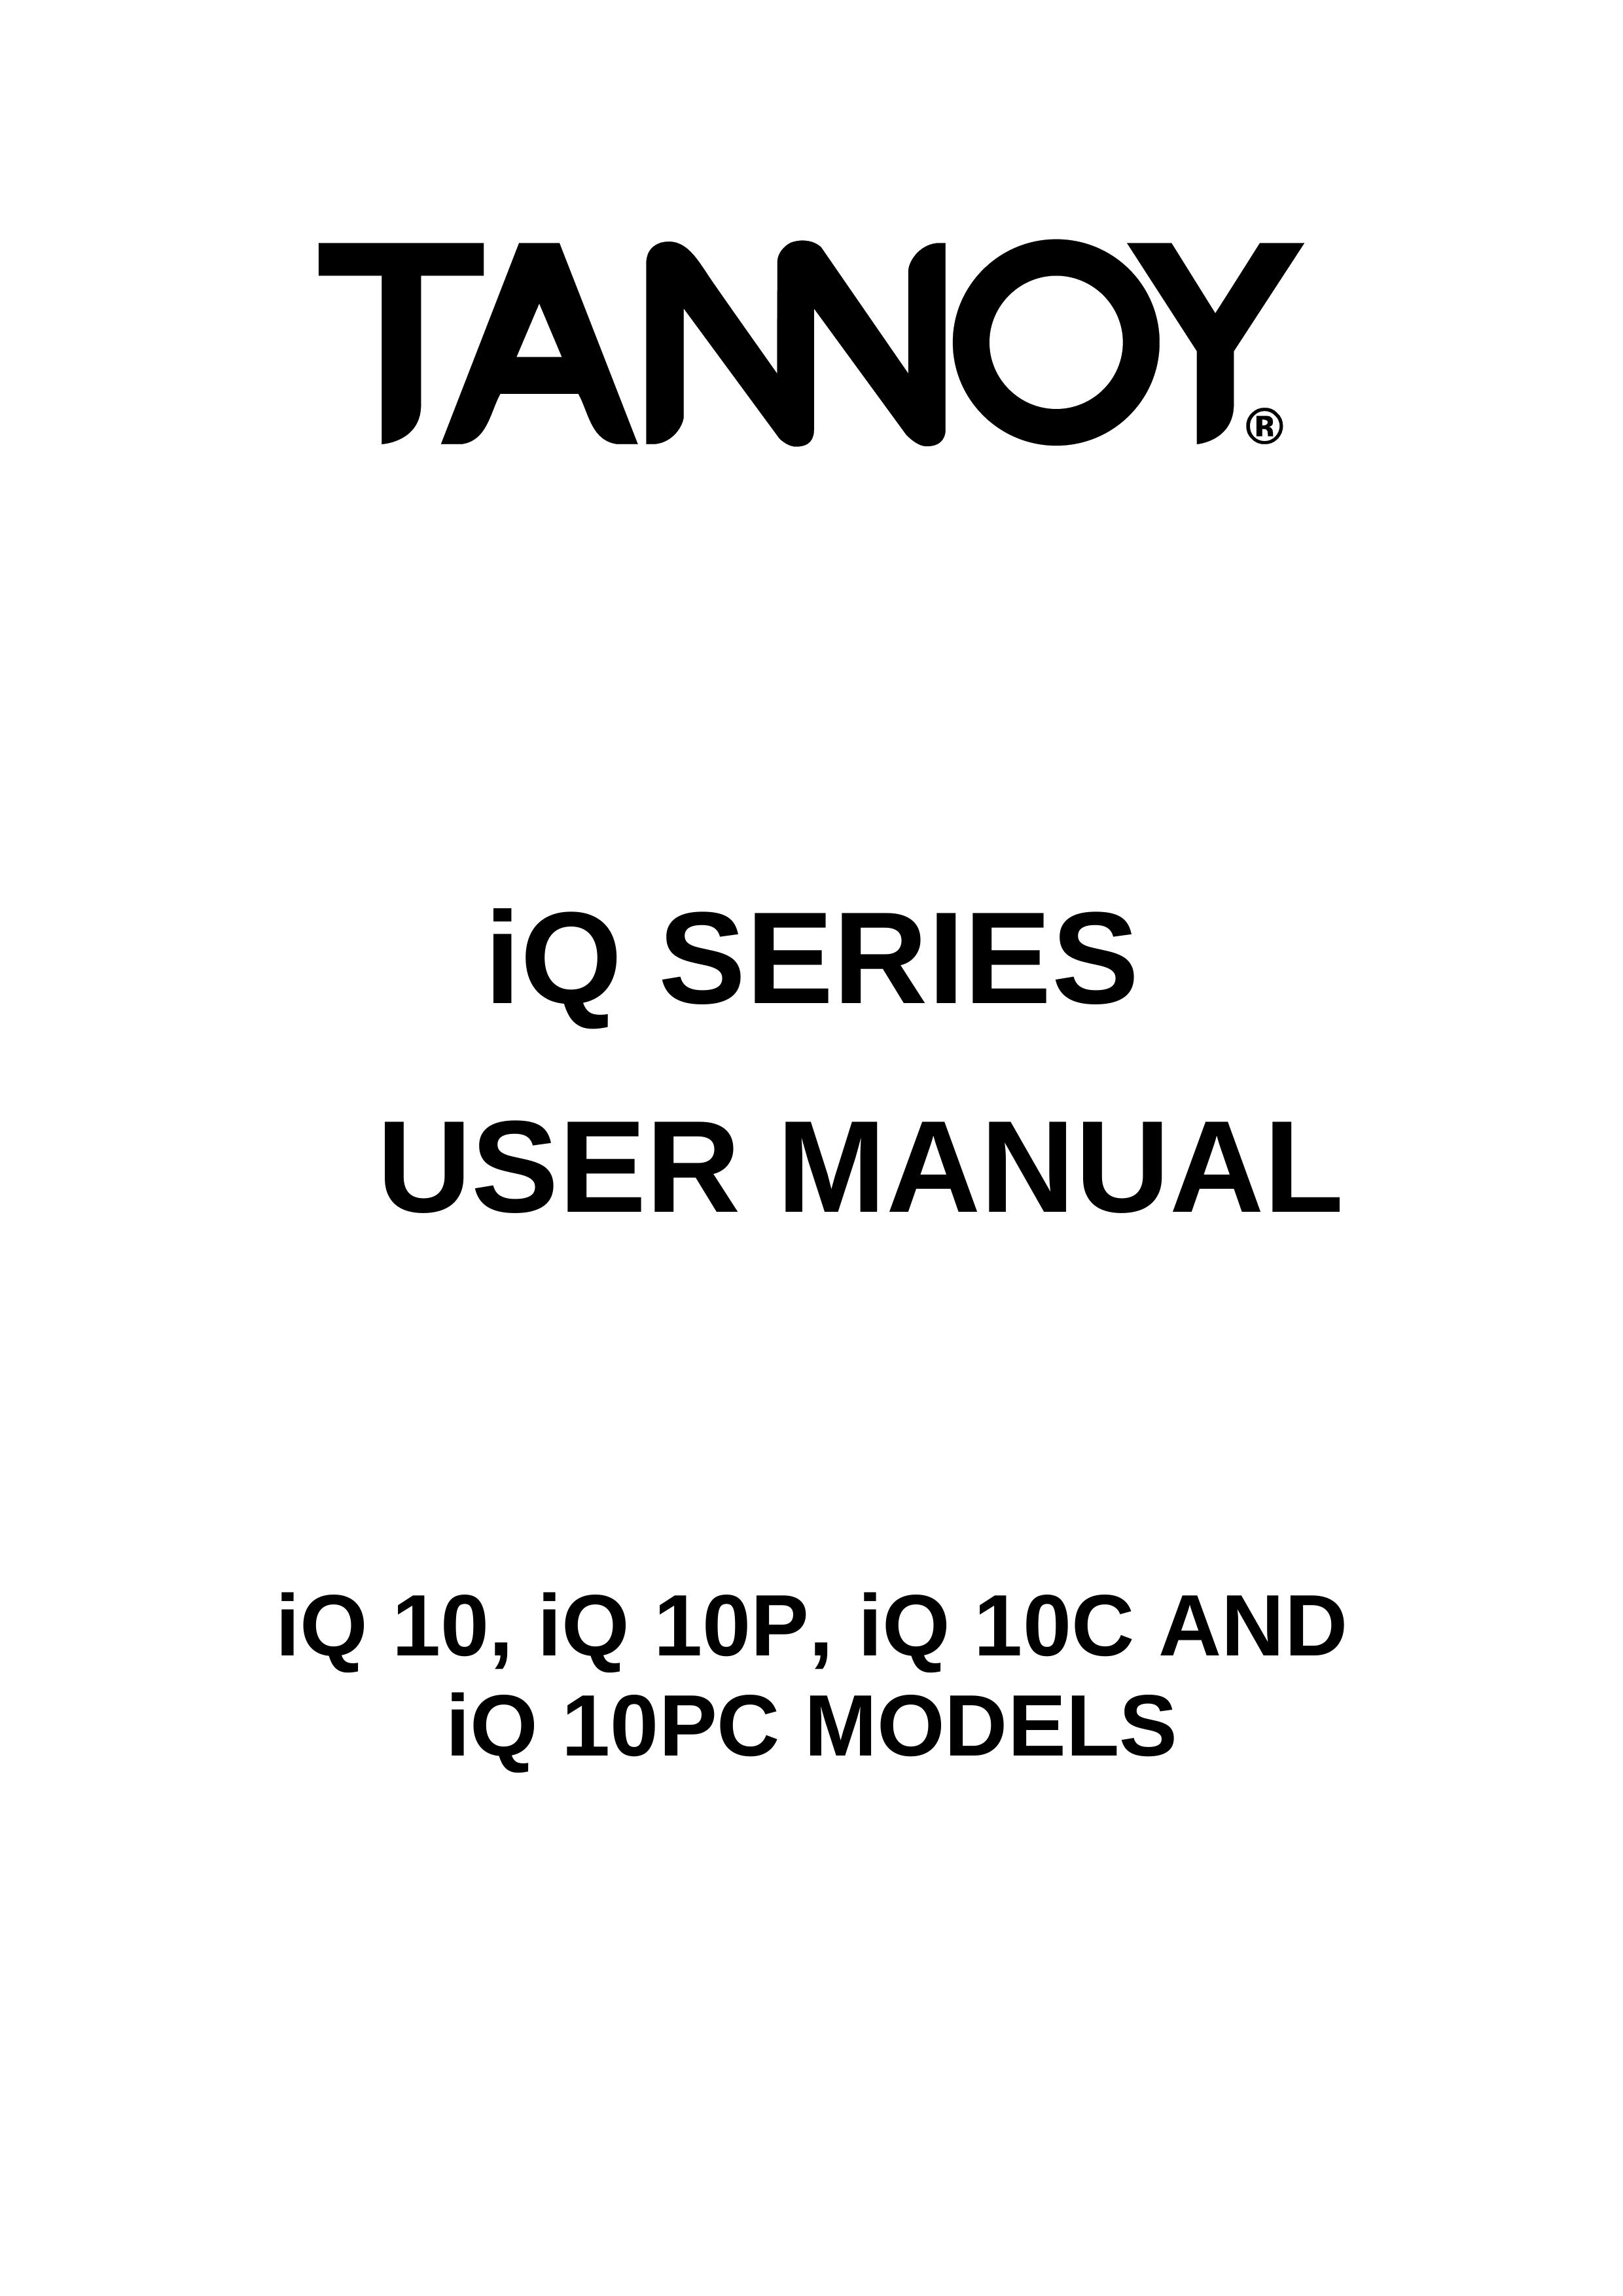 3Com iQ 10C Refrigerator User Manual